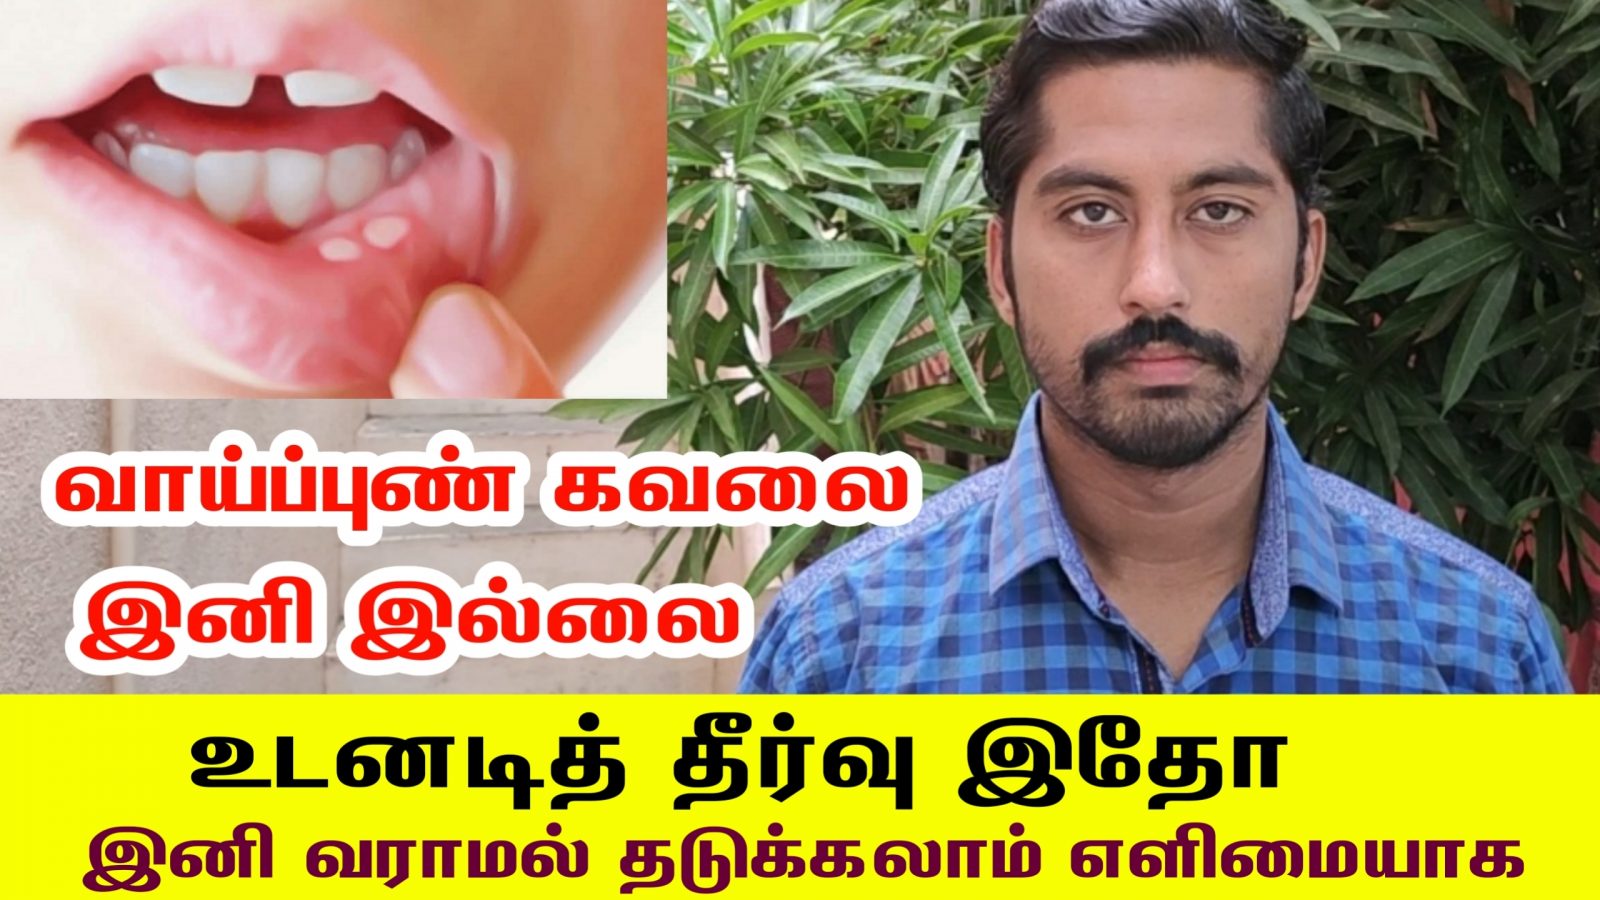 வாய்ப்புண் உடனடியாக குணமாக வேண்டுமா? இனி வராமல் தடுக்கலாம் எளிமையாக | Mouth Ulcer Treatment in Tamil